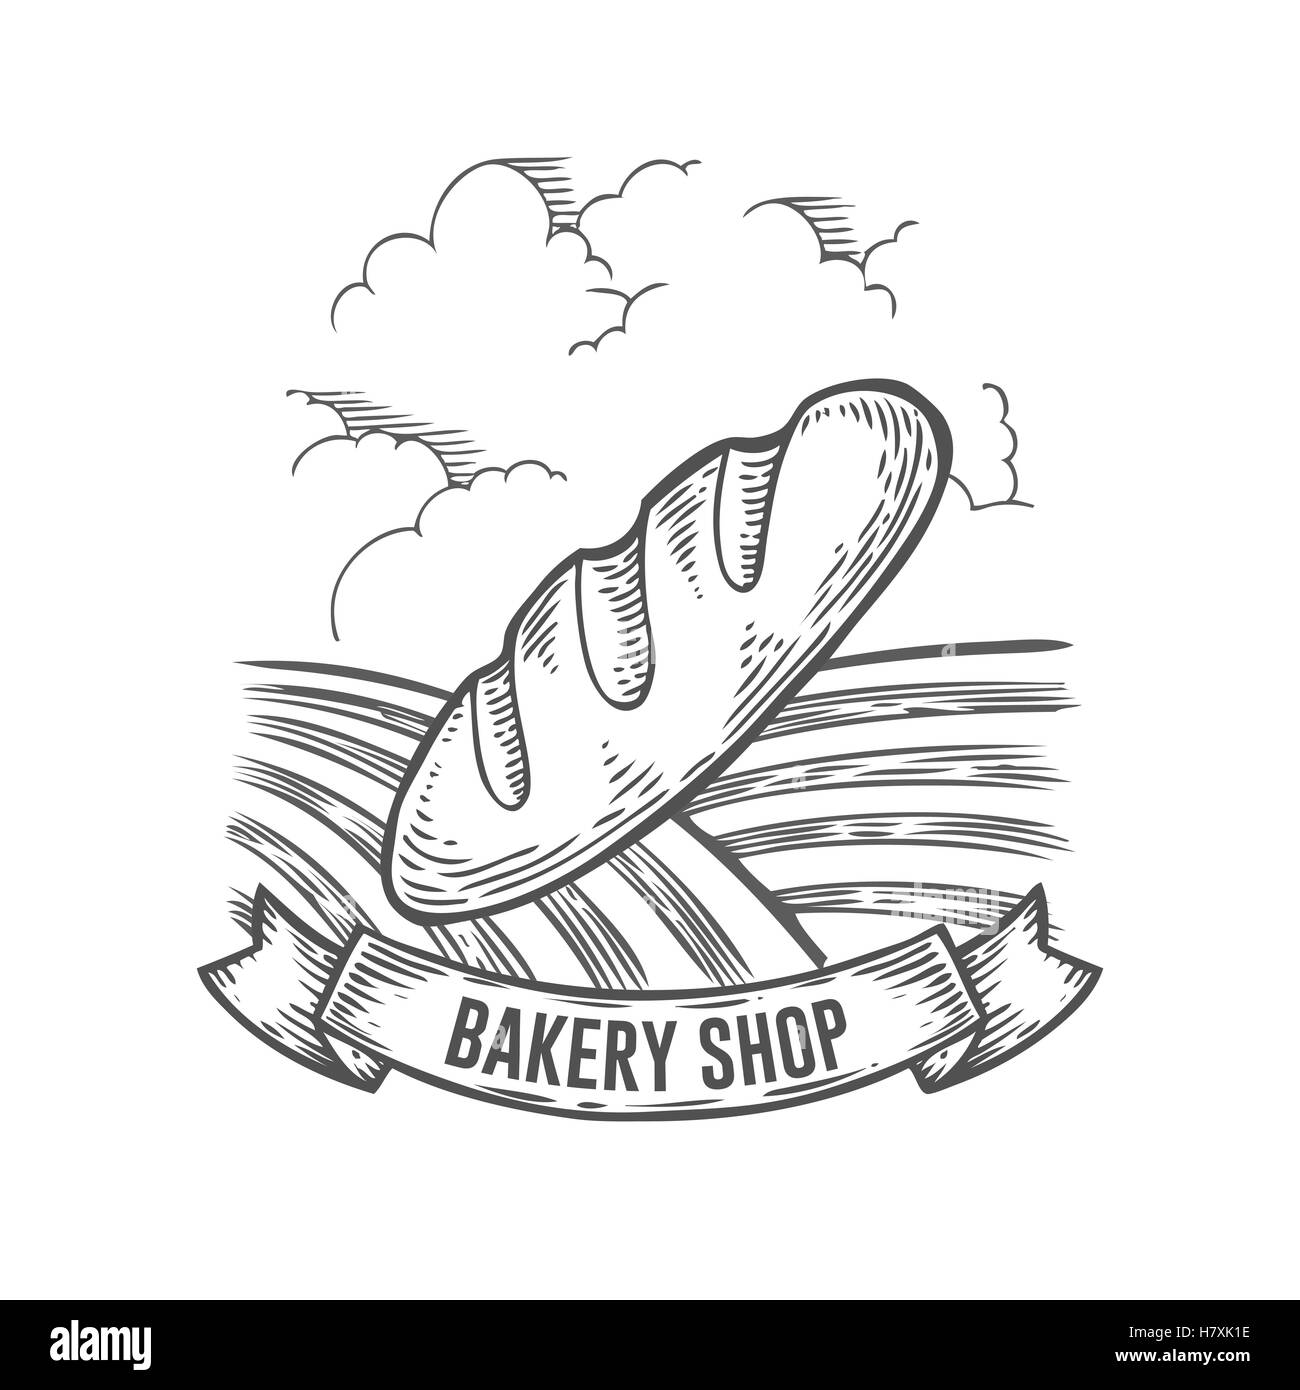 Bäckerei-Shop-Brot-Abzeichen. Monochrom Vintage gravierte Brötchen, glutenfreie Bio Zeichen isoliert auf weißem Hintergrund. Skizze handgezeichnete re Stock Vektor